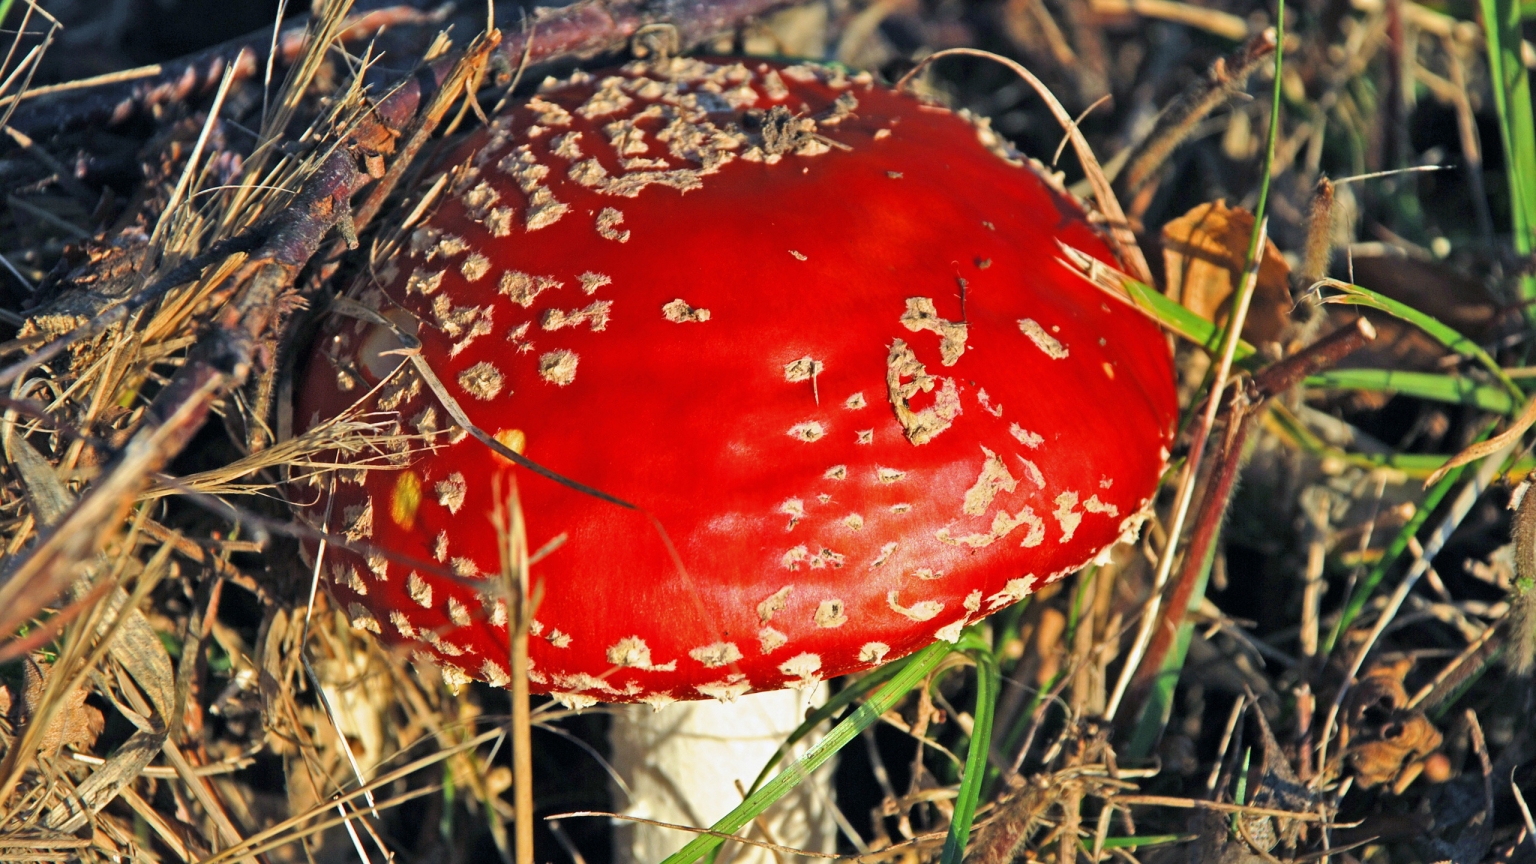 Red Mushroom for 1536 x 864 HDTV resolution